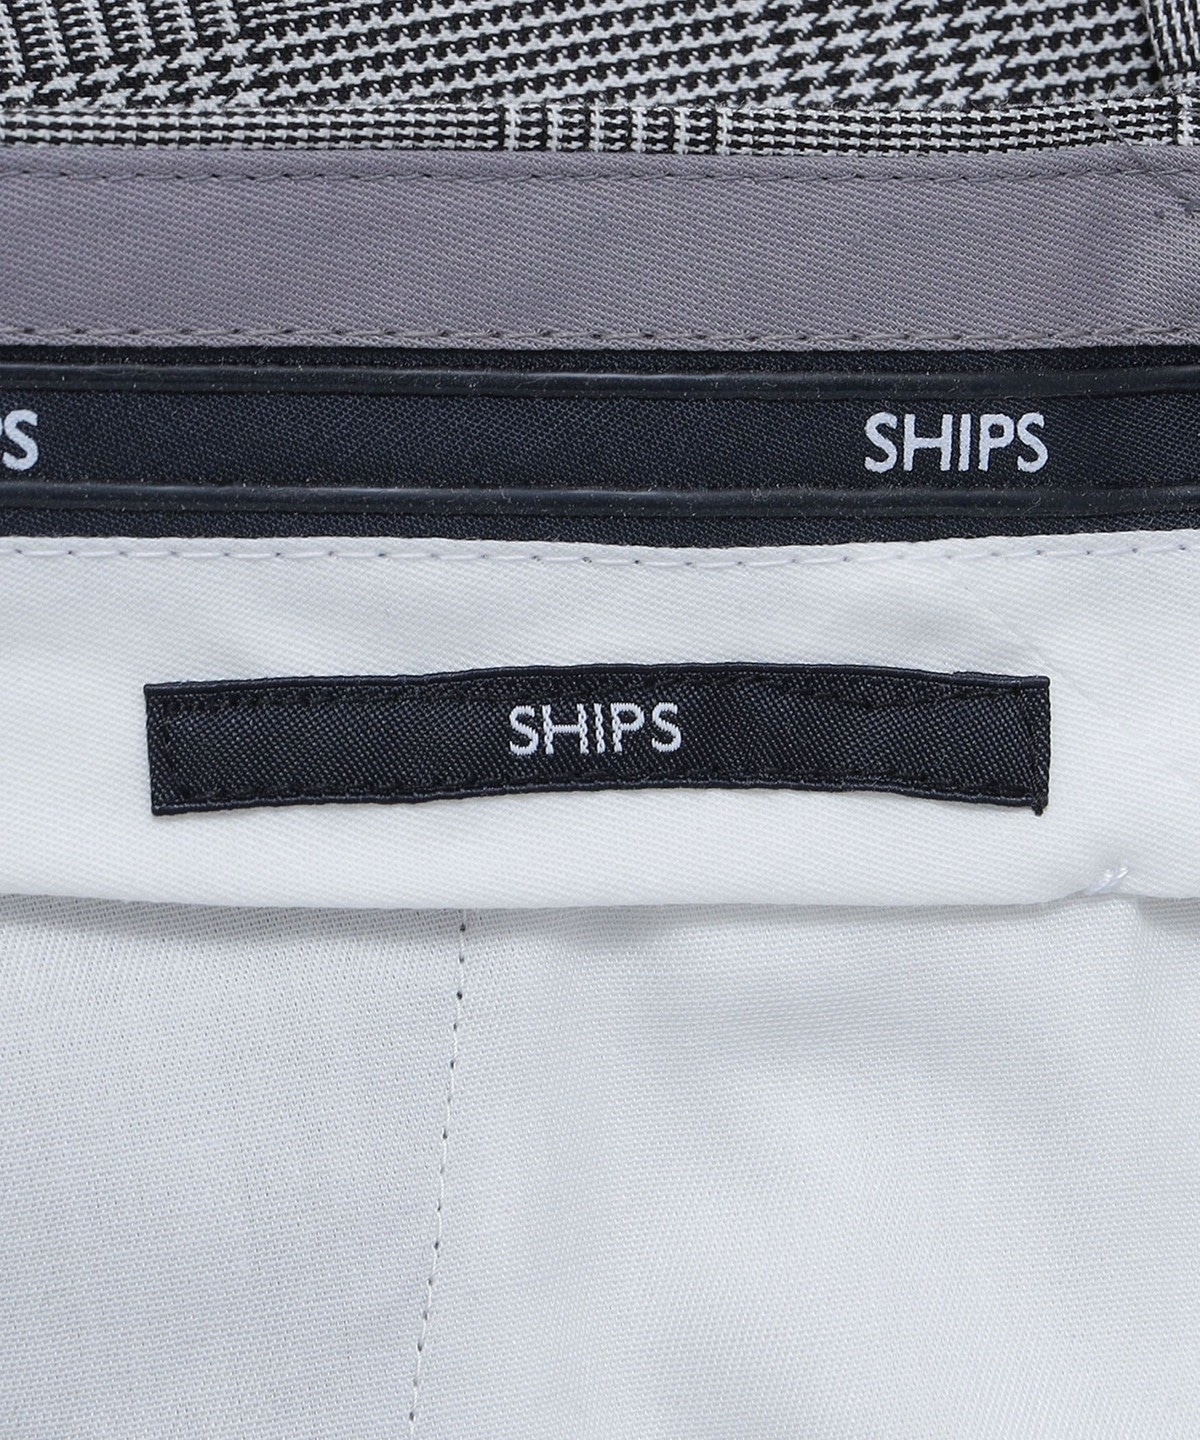 SHIPS: ノープリーツ ツイル ストレッチ チェック パンツ: パンツ